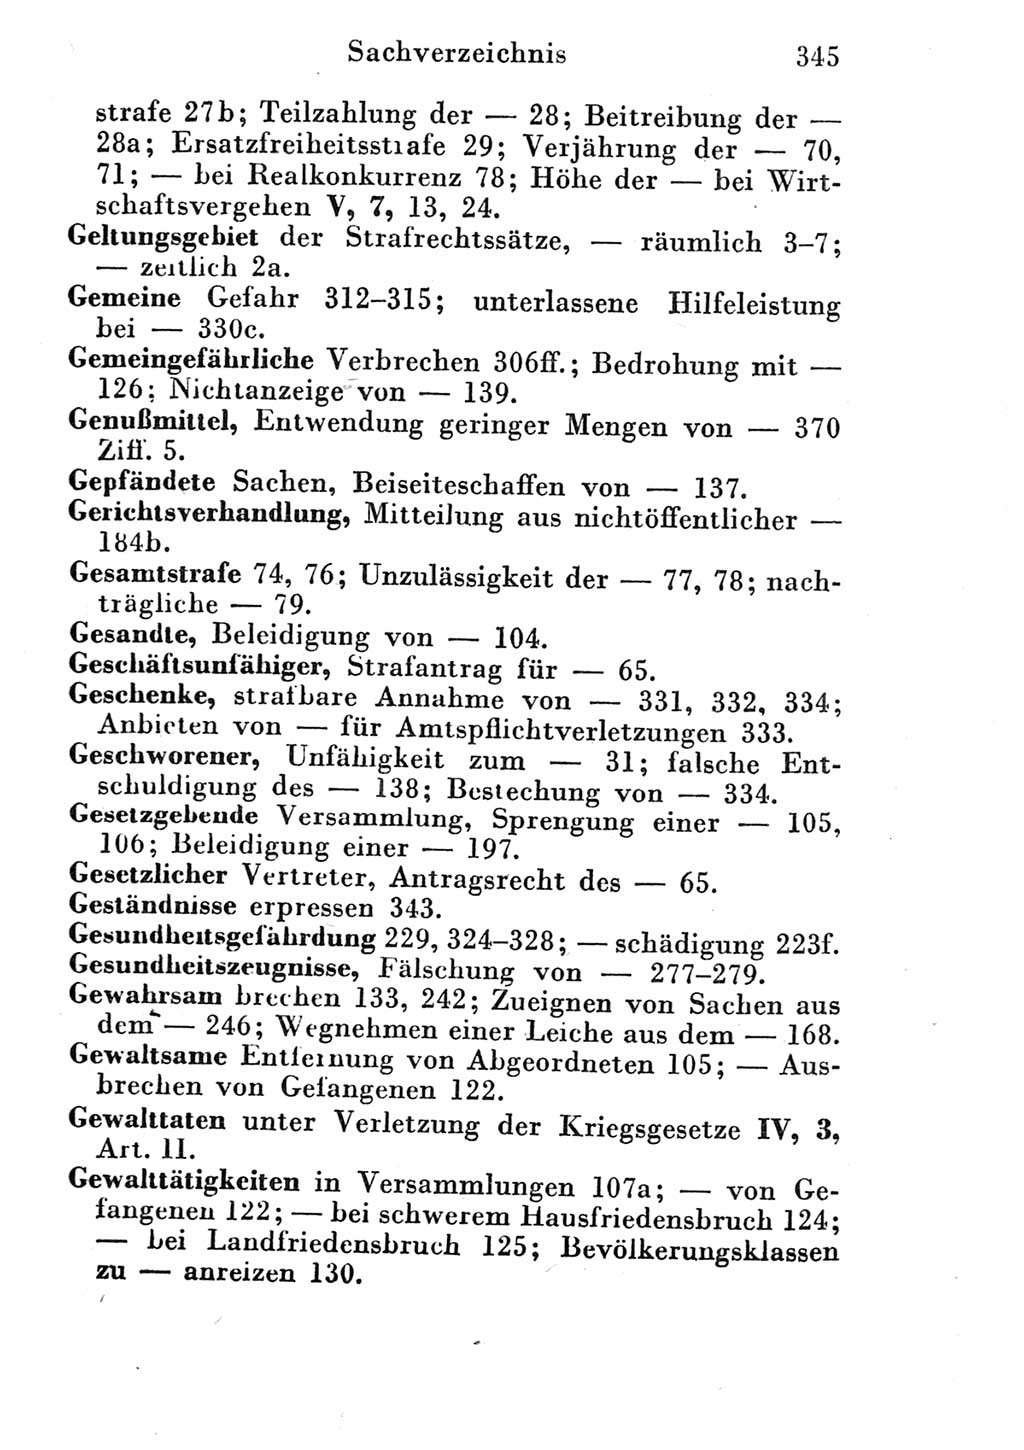 Strafgesetzbuch (StGB) und andere Strafgesetze [Deutsche Demokratische Republik (DDR)] 1951, Seite 345 (StGB Strafges. DDR 1951, S. 345)